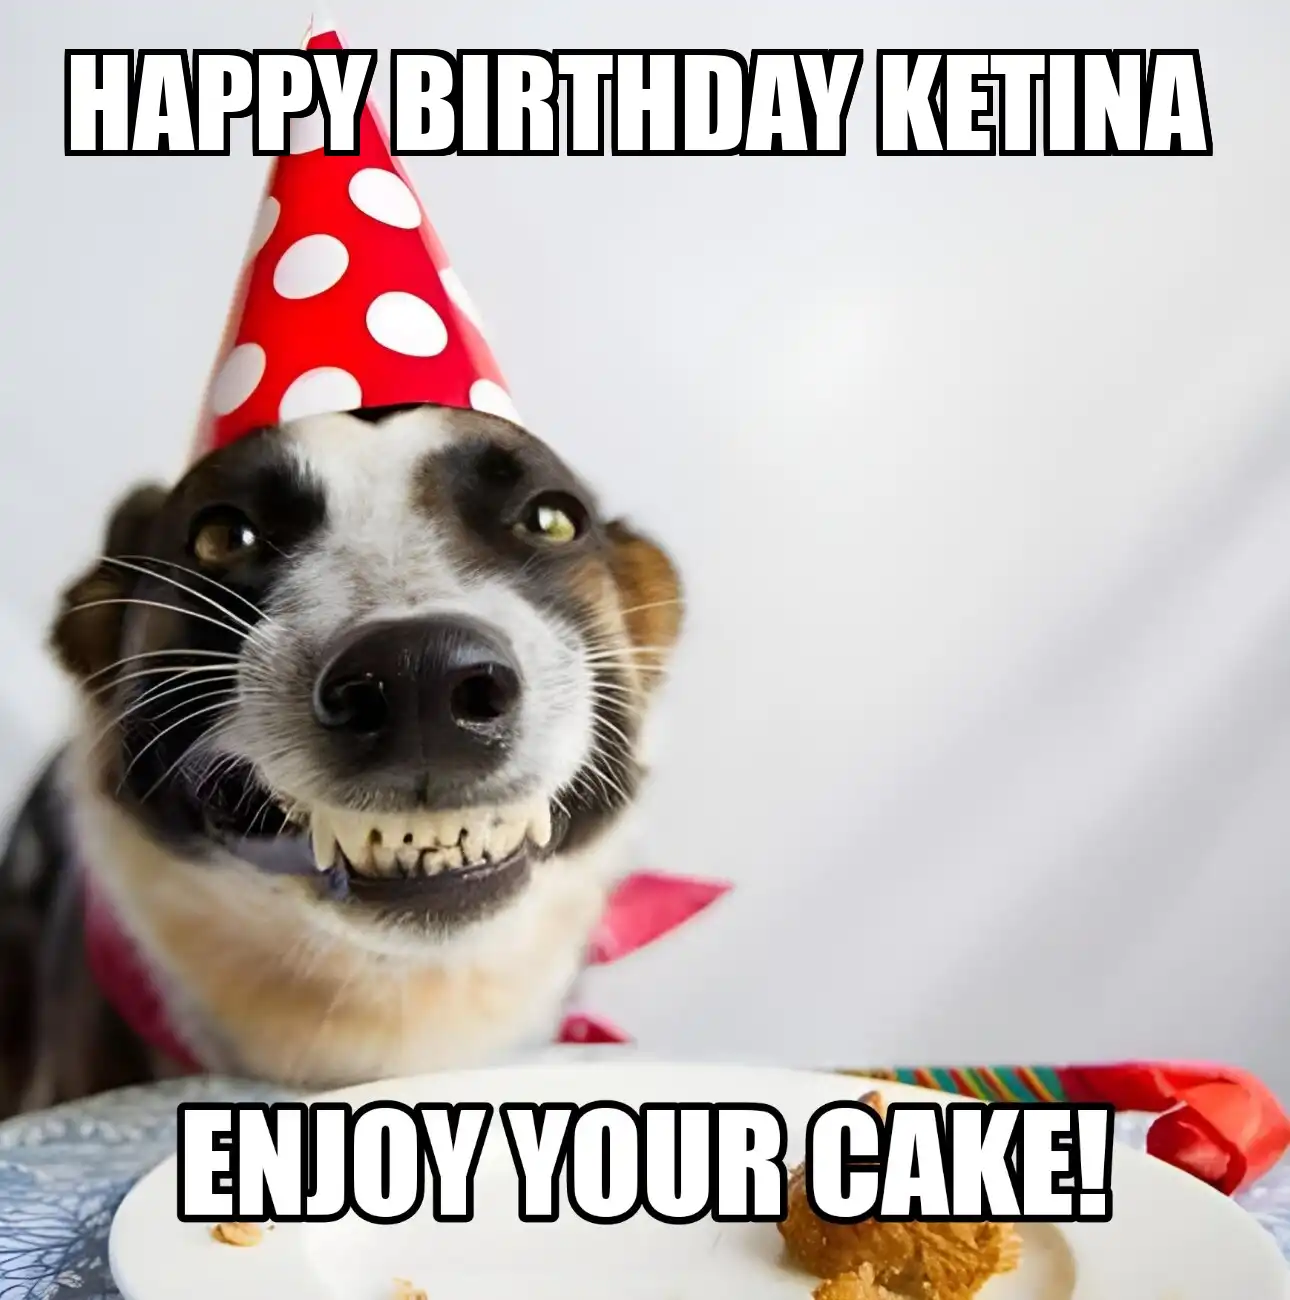 Happy Birthday Ketina Enjoy Your Cake Dog Meme